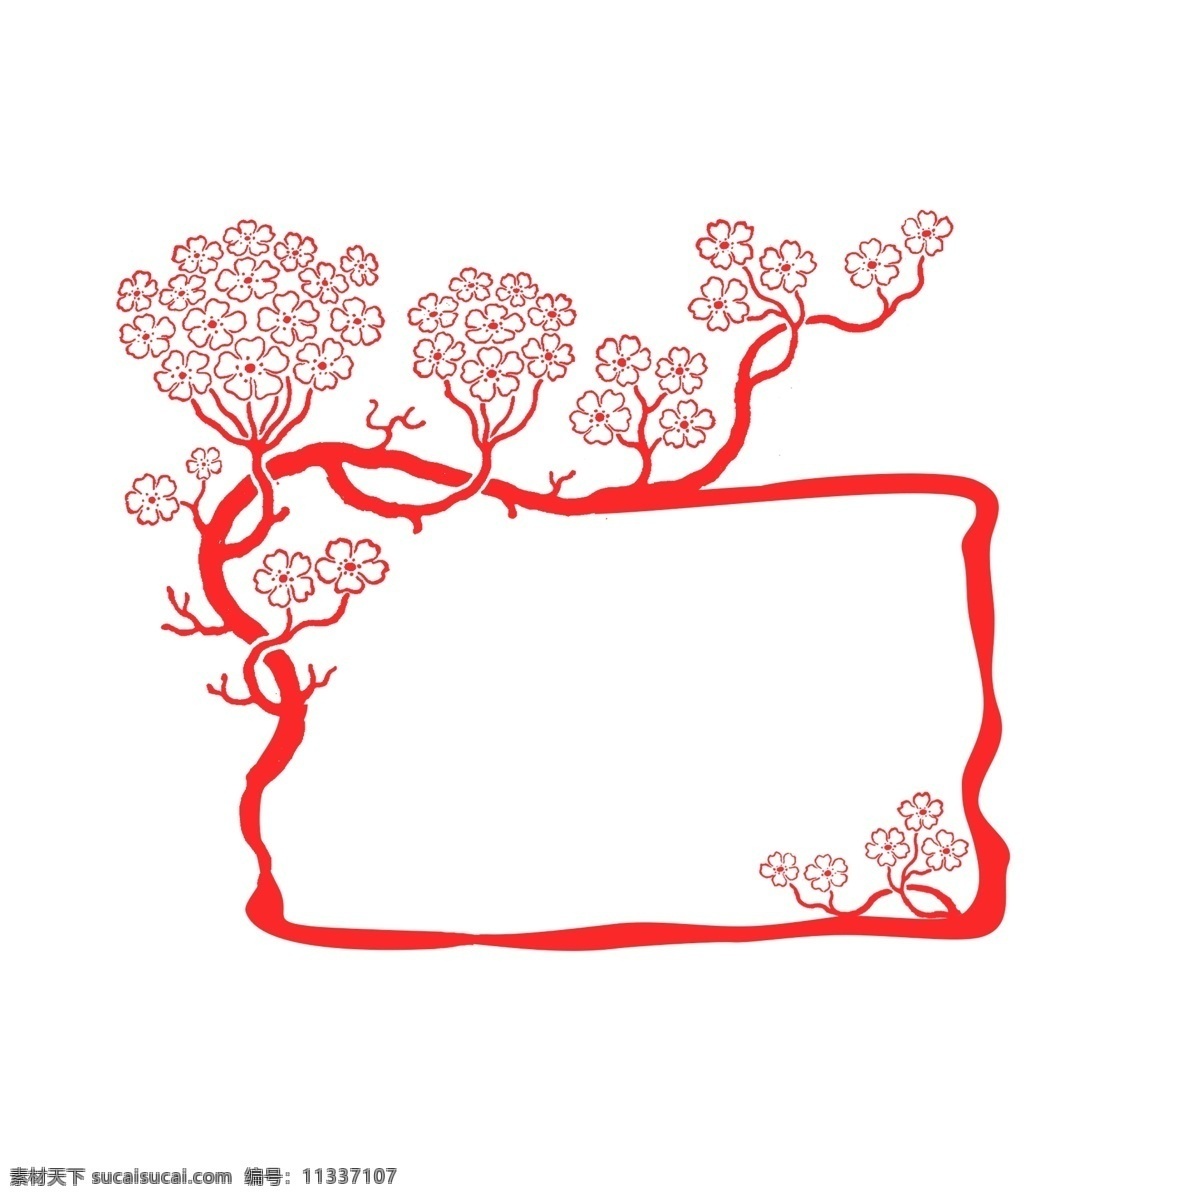 梅花 图案 中国 风 边框 装饰 不规则 红色 商务 封面 插图 简约 中国风 正方形 海报 中国红 简洁 大气